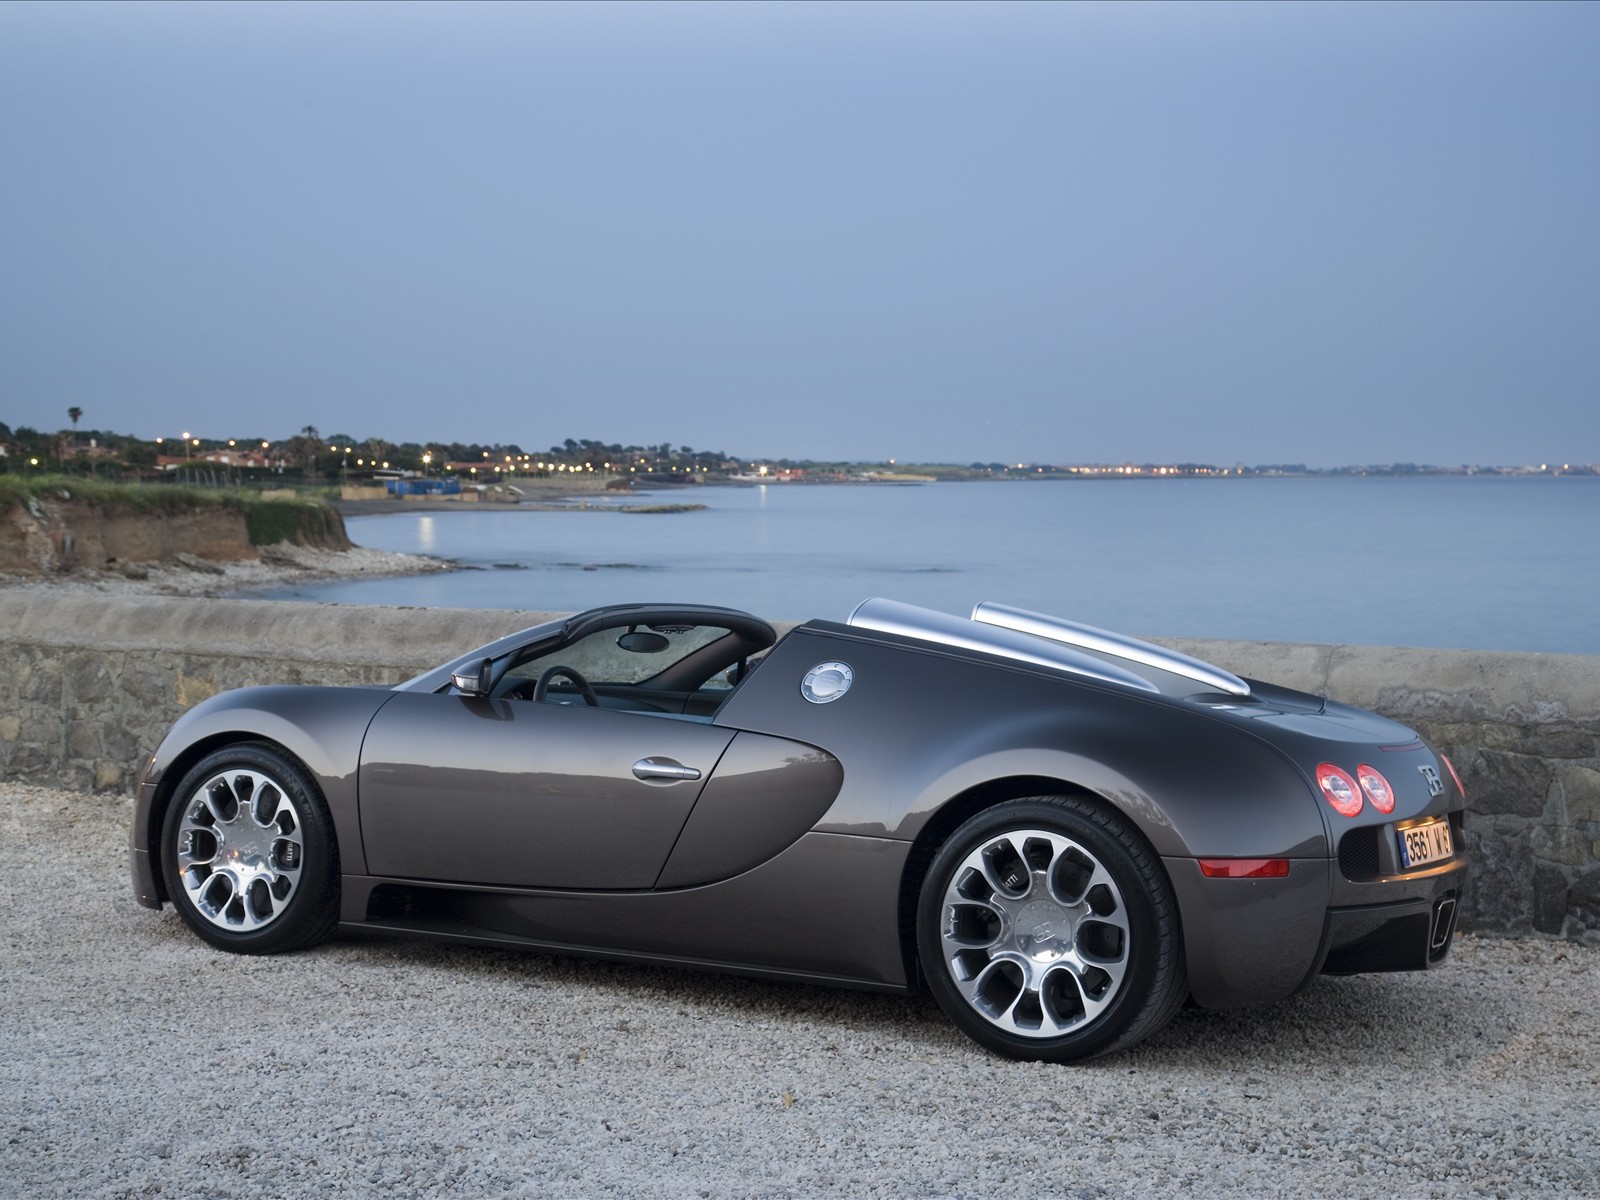 Download mobile wallpaper Transport, Sea, Sky, Auto, Bugatti for free.